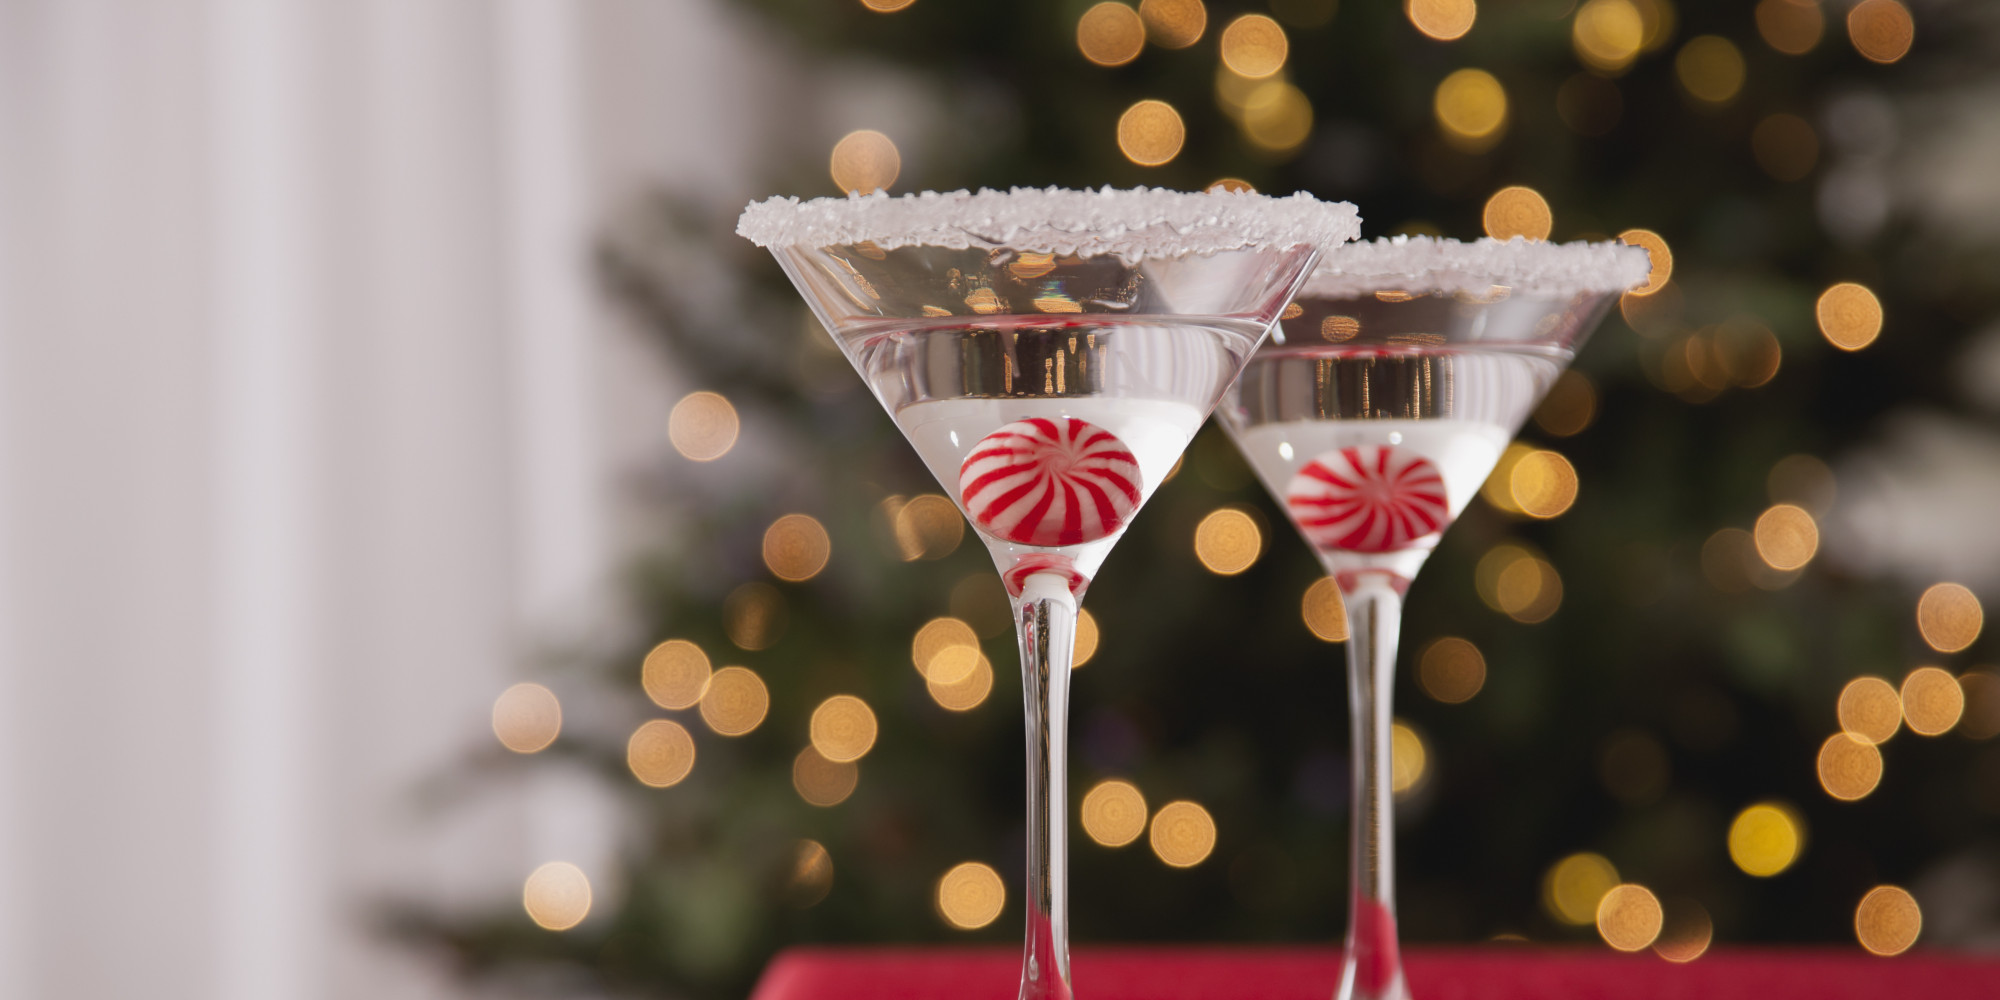 USA, Illinois, Metamora, Christmas cocktail with christmas tree